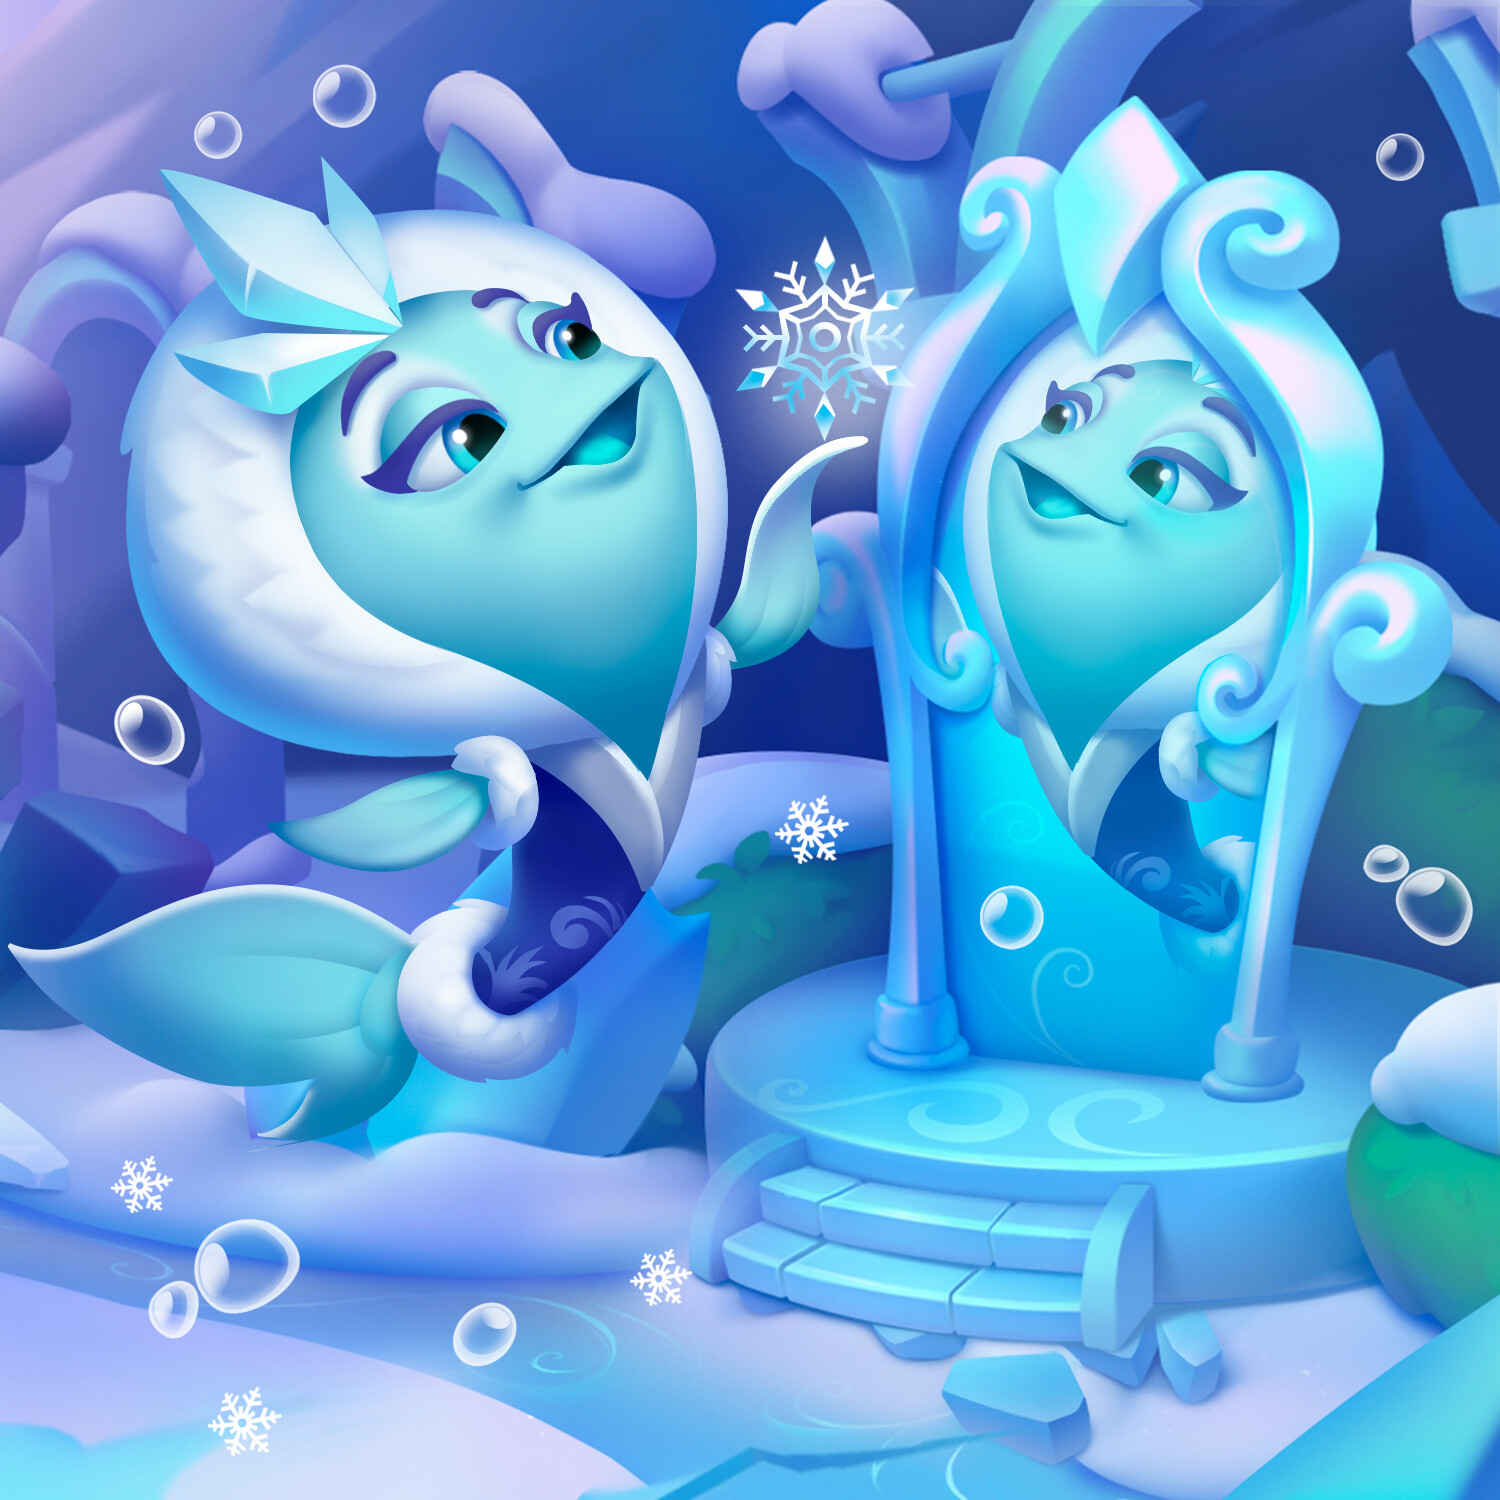 ArtStation - Snow queen fish